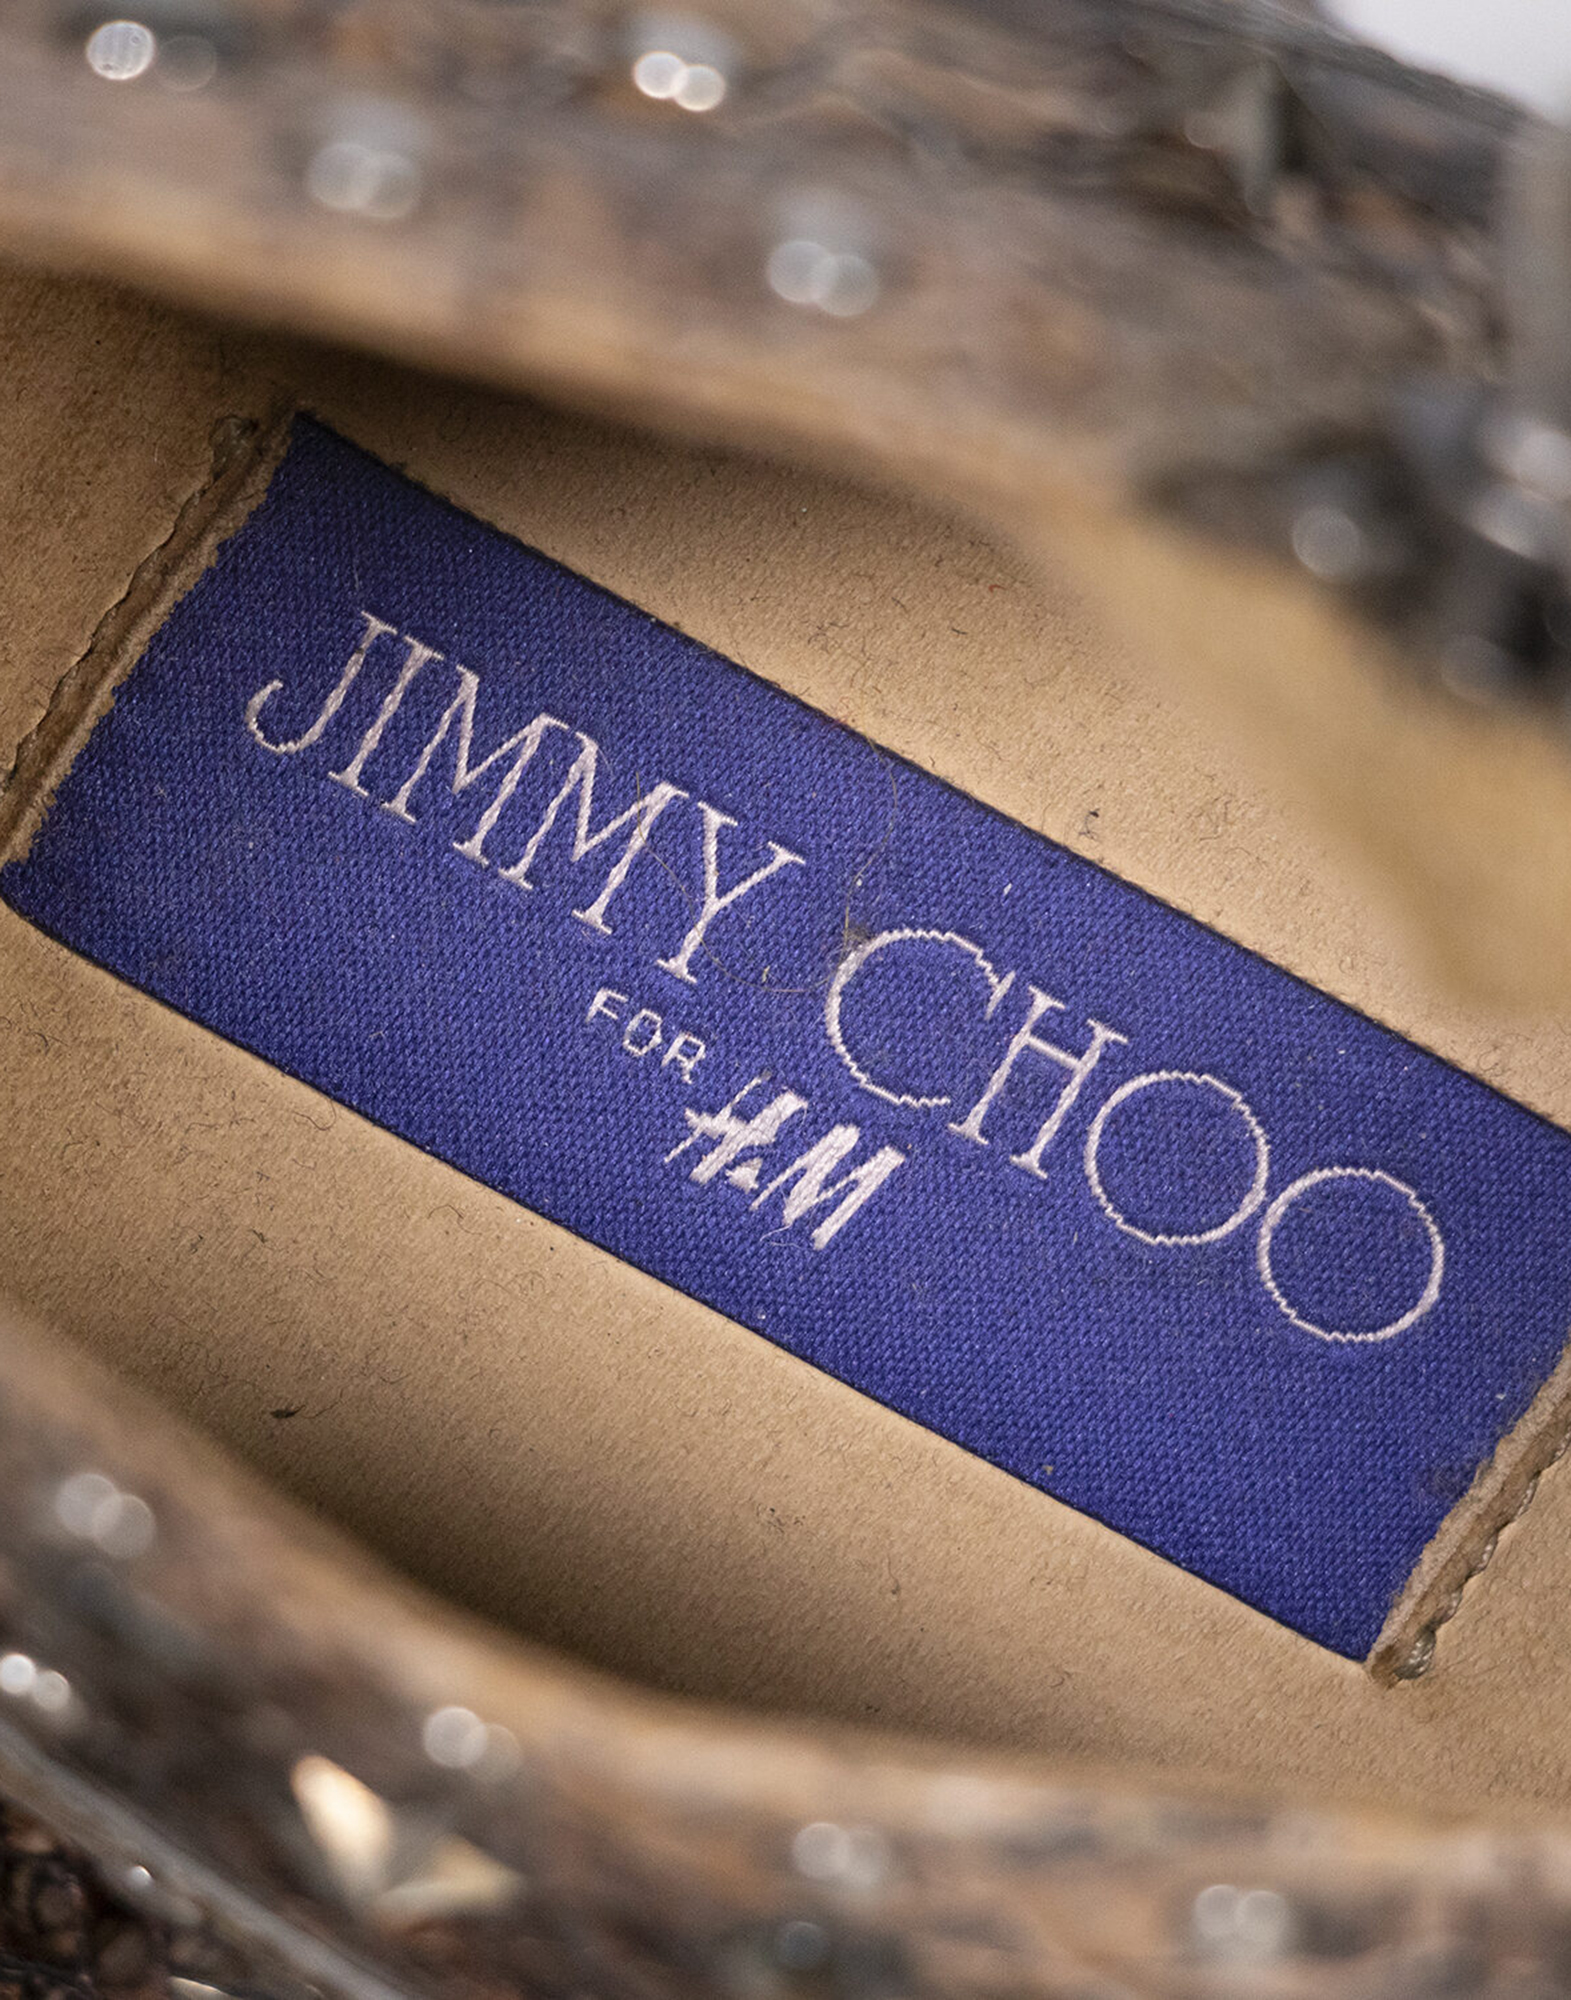 Jimmy Choo - Stivaletti borchiati